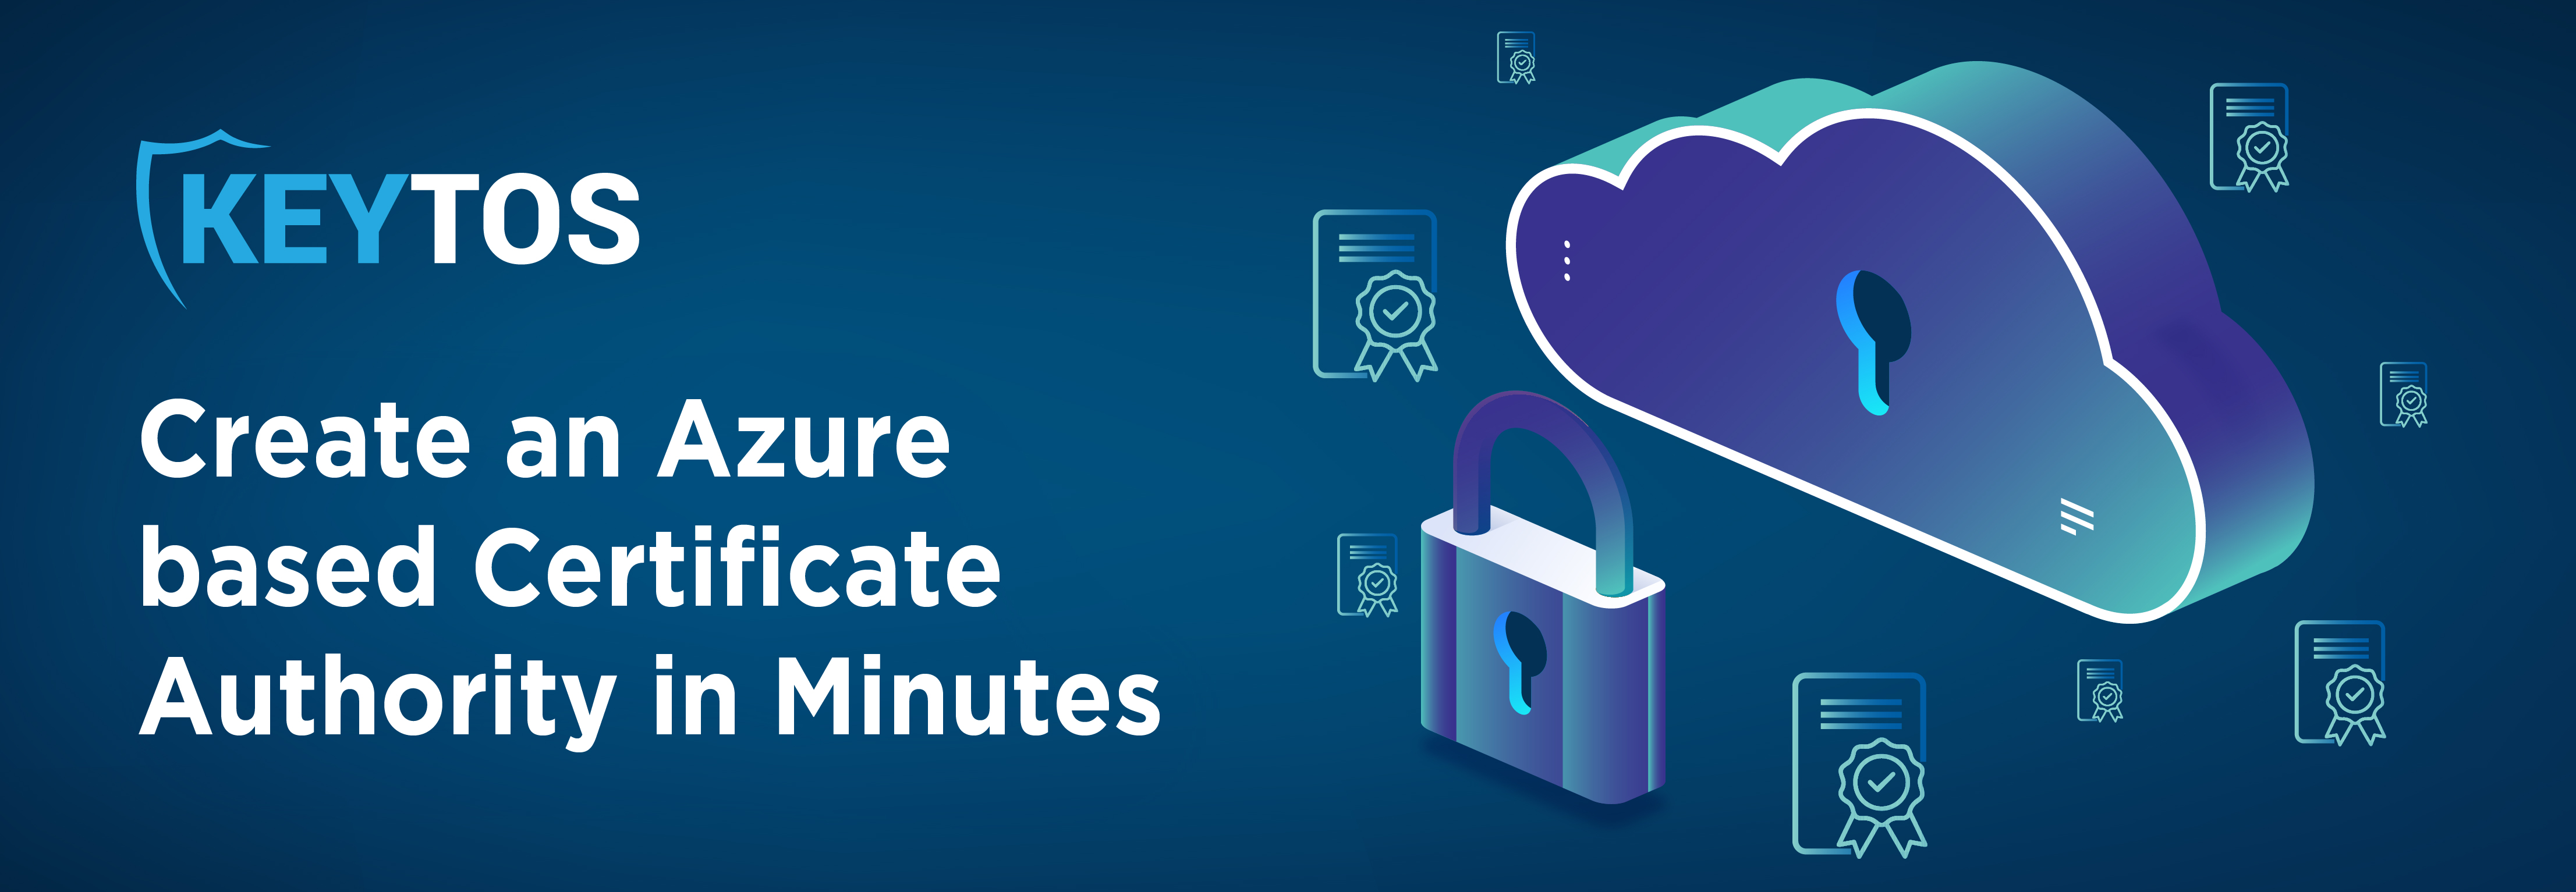 Cree una CA basada en Azure en minutos. Cree una autoridad de certificación basada en Azure en minutos. Cómo implementar una CA en Azure. Cómo implementar una autoridad de certificación en Azure.